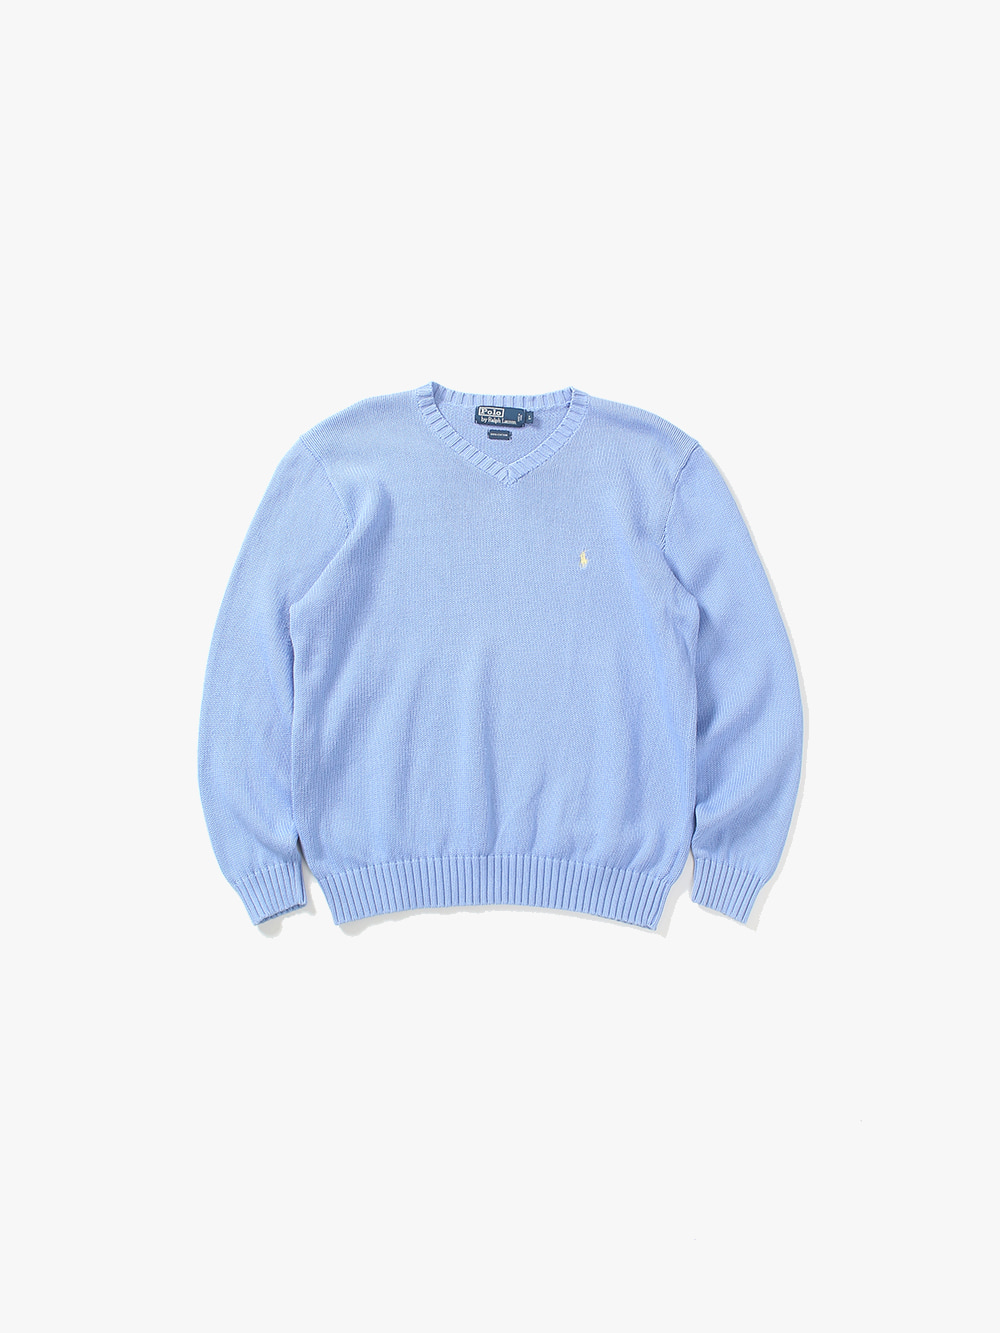 [ L ] Polo Ralph Lauren Sweater (6287)